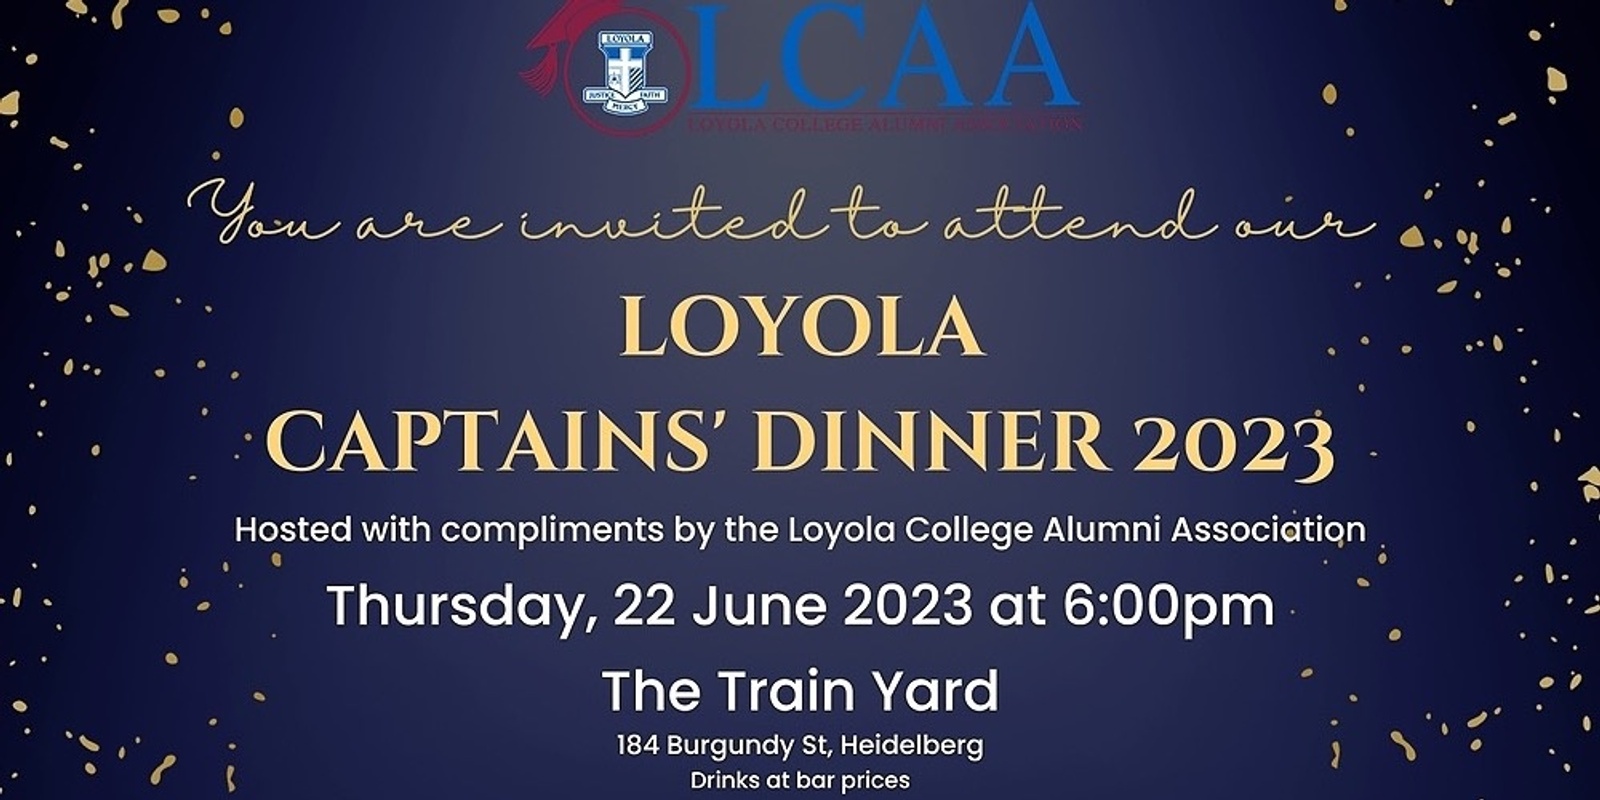 Loyola Captain's Dinner 2023